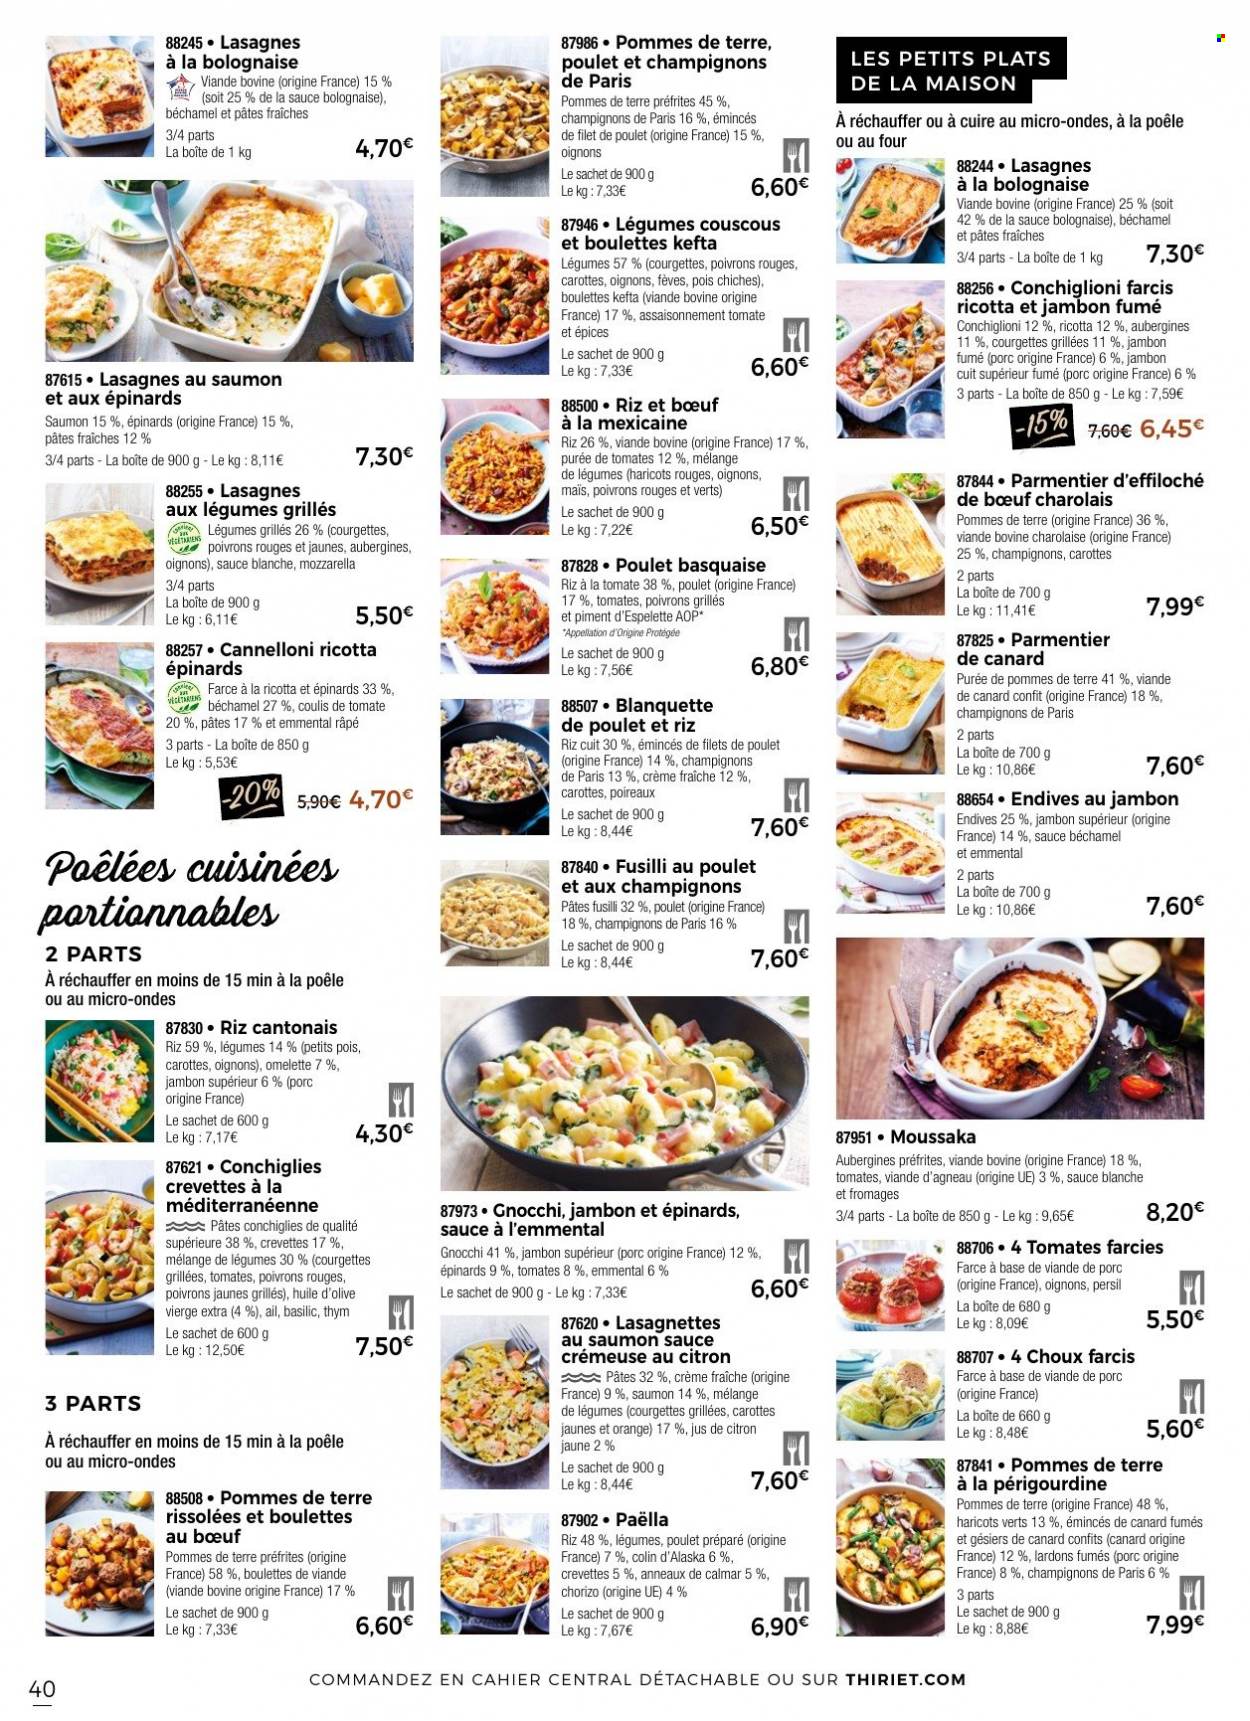 thumbnail - Catalogue Thiriet - 02/07/2022 - 02/08/2022 - Produits soldés - gésiers, ail, aubergine, courgette, oignons, poireau, champignon de Paris, filet de poulet, viande de poulet, boulettes de bœuf, viande d'agneau, colin, crevettes, calamars, gnocchi, tomate farcie, lasagnes, paella, riz cantonais, chorizo, lardons, mozzarella, fromage râpé, crème fraîche, petit pois, rissolées, pois chiche, poivrons grillés, thym, persil, huile, huile d'olive vierge extra, huile d'olive. Page 40.